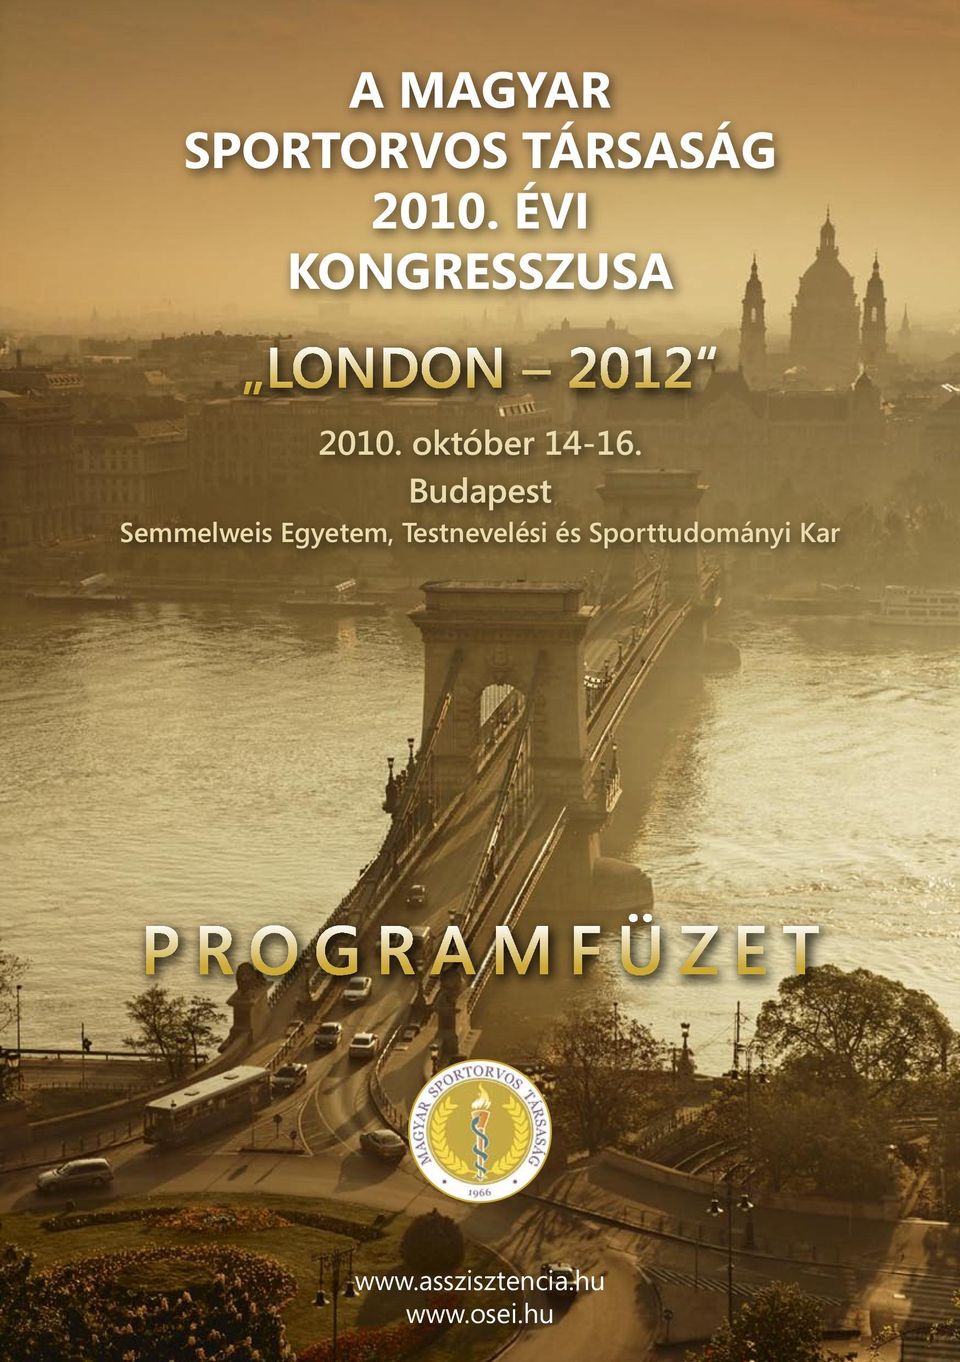 Budapest Semmelweis Egyetem, Testnevelési és